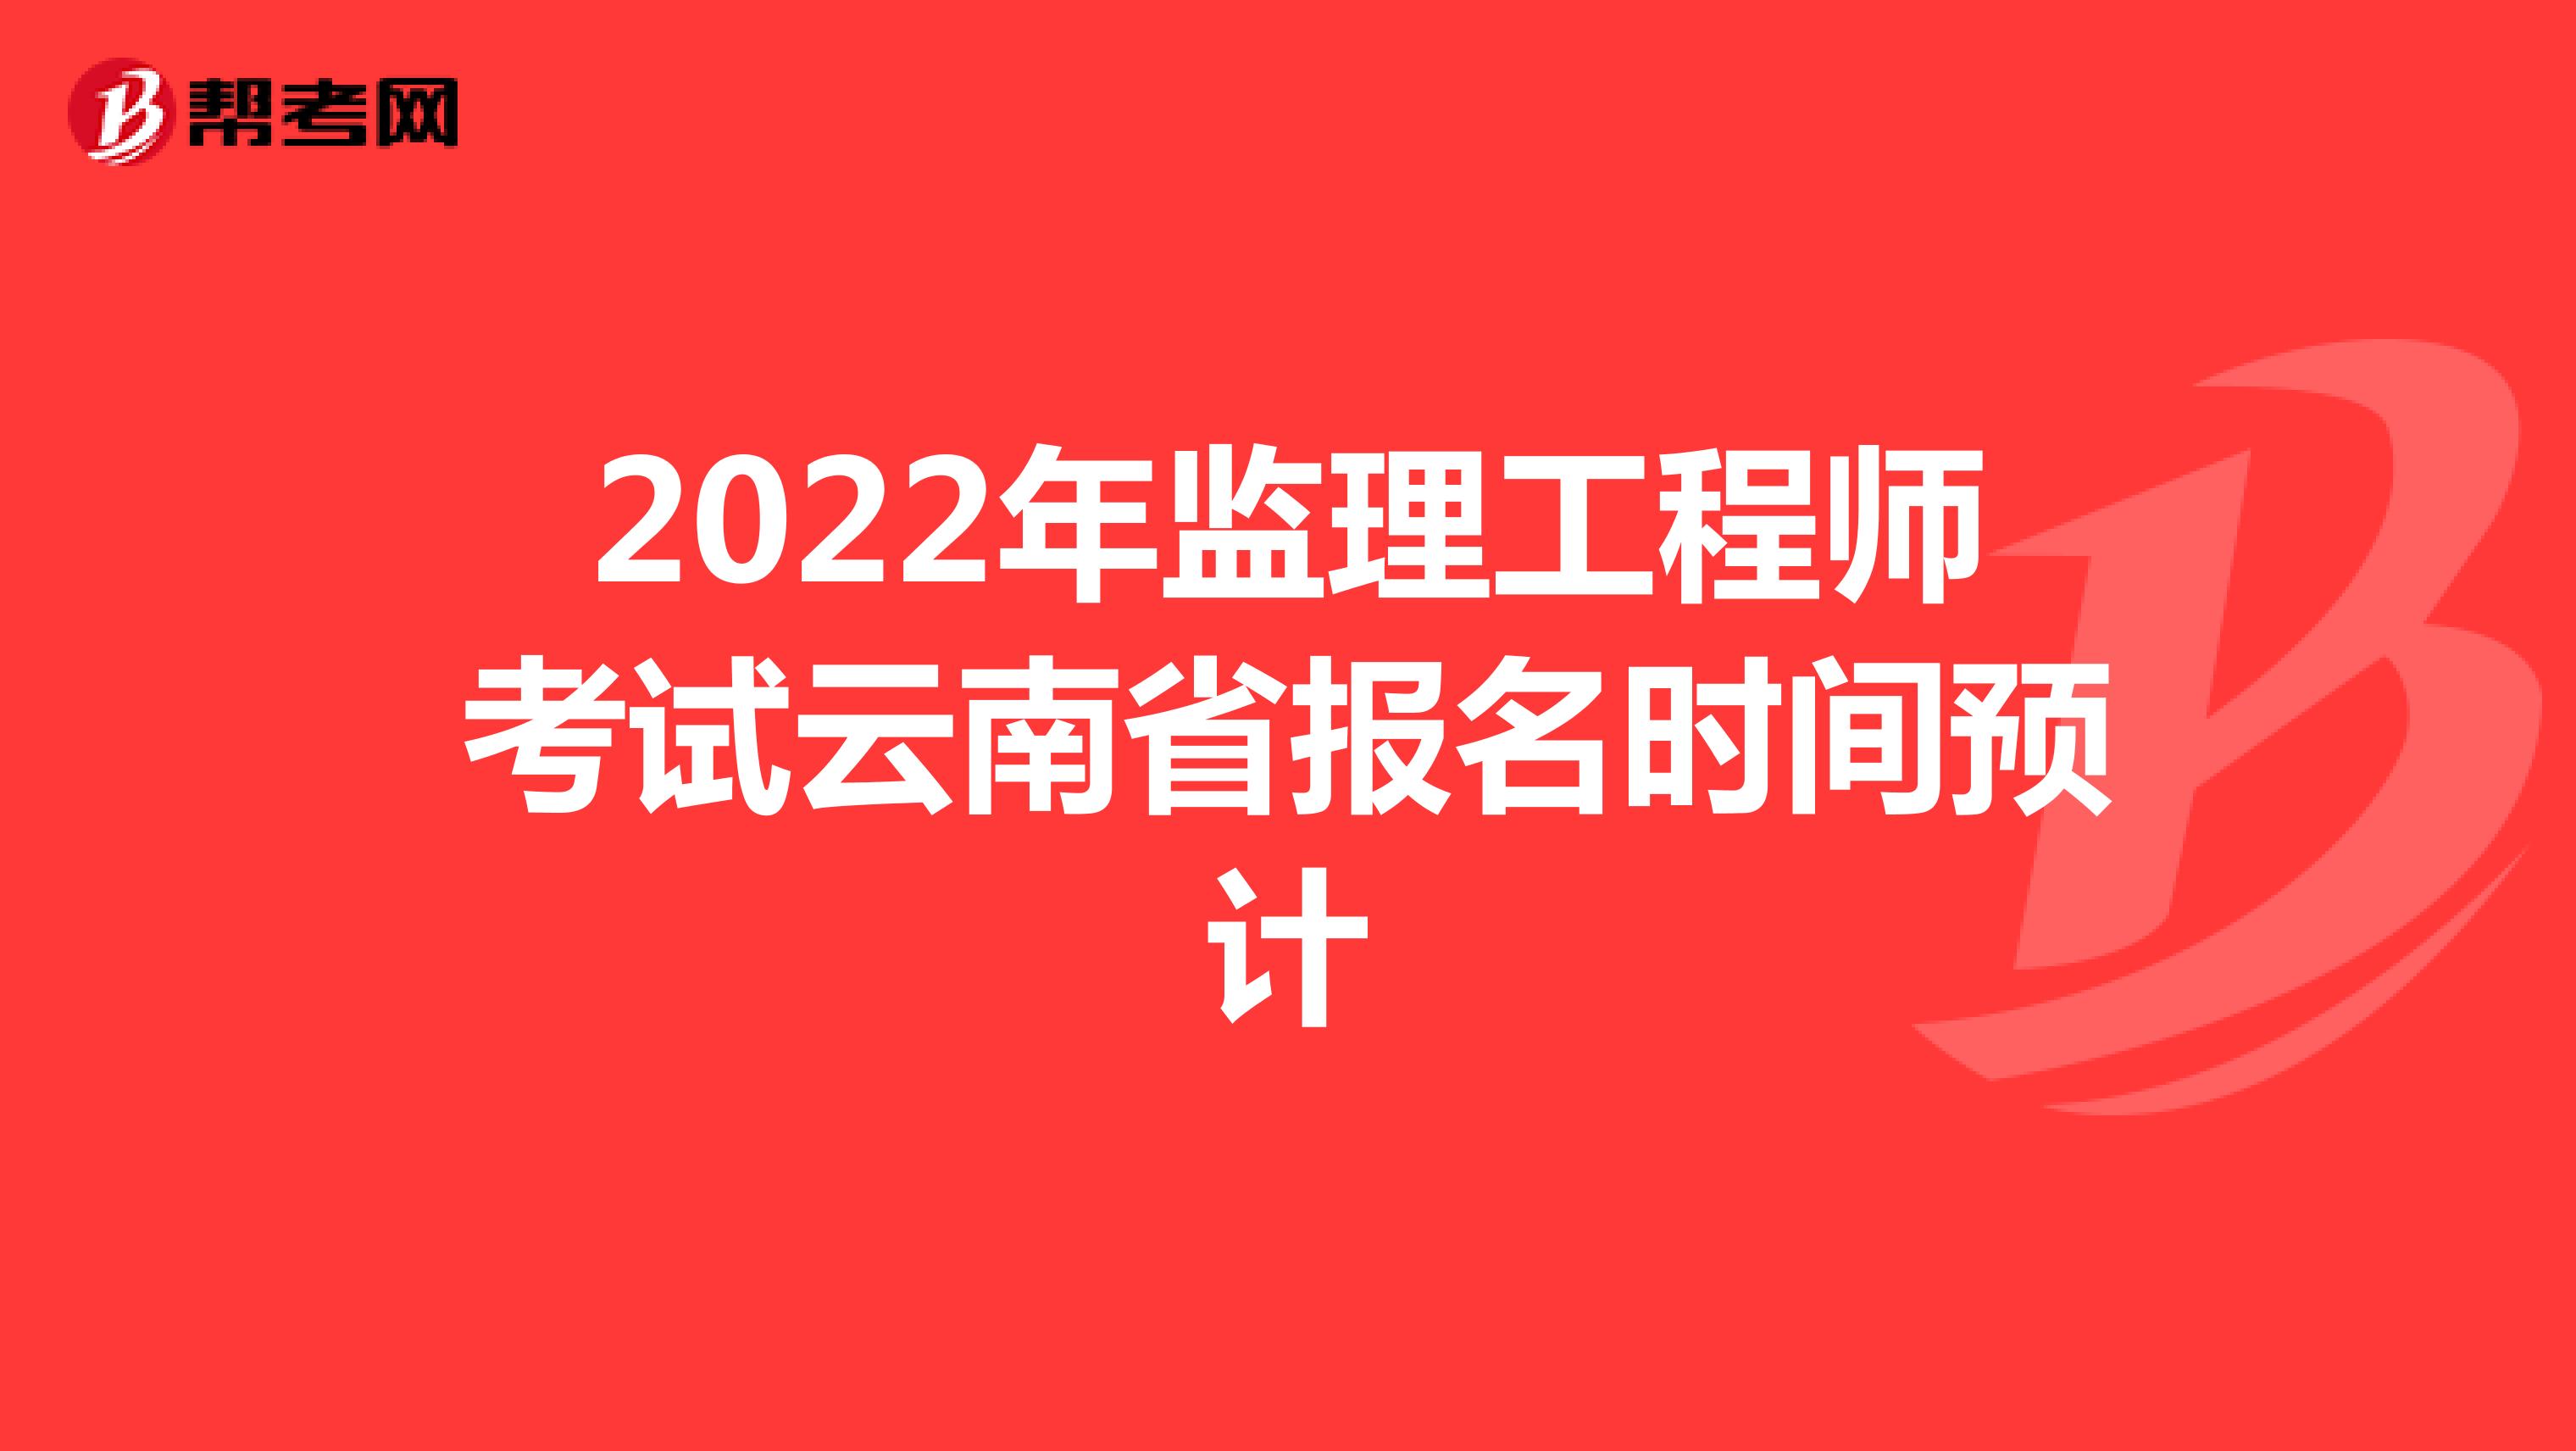 2022年监理工程师考试云南省报名时间预计